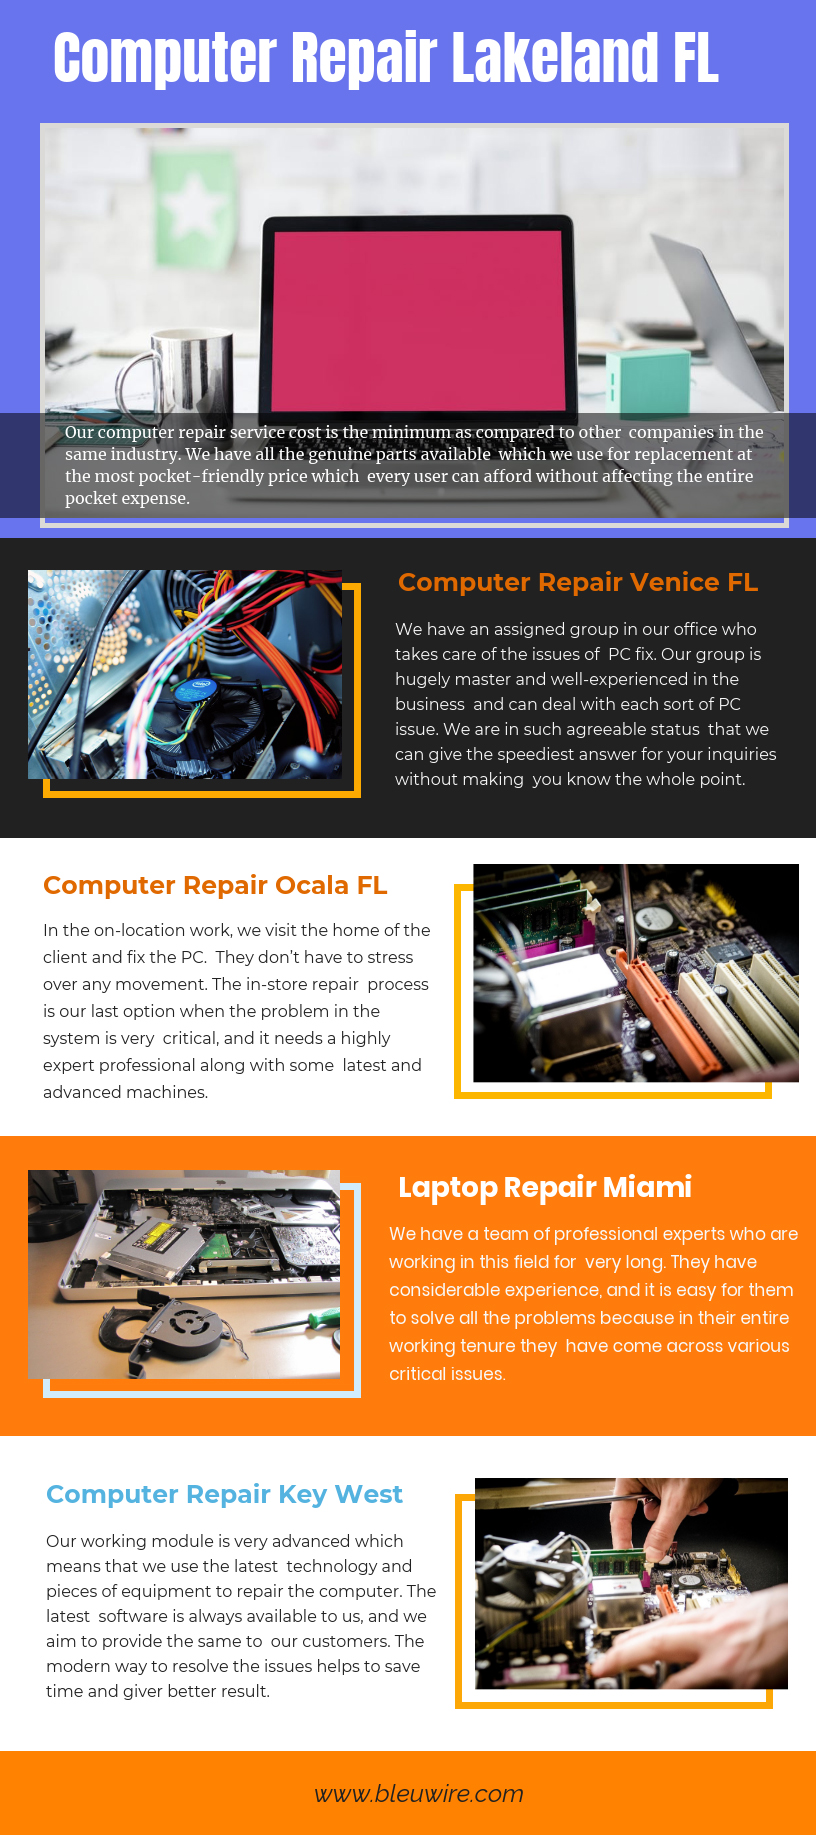 Computer Repair Lakeland FL